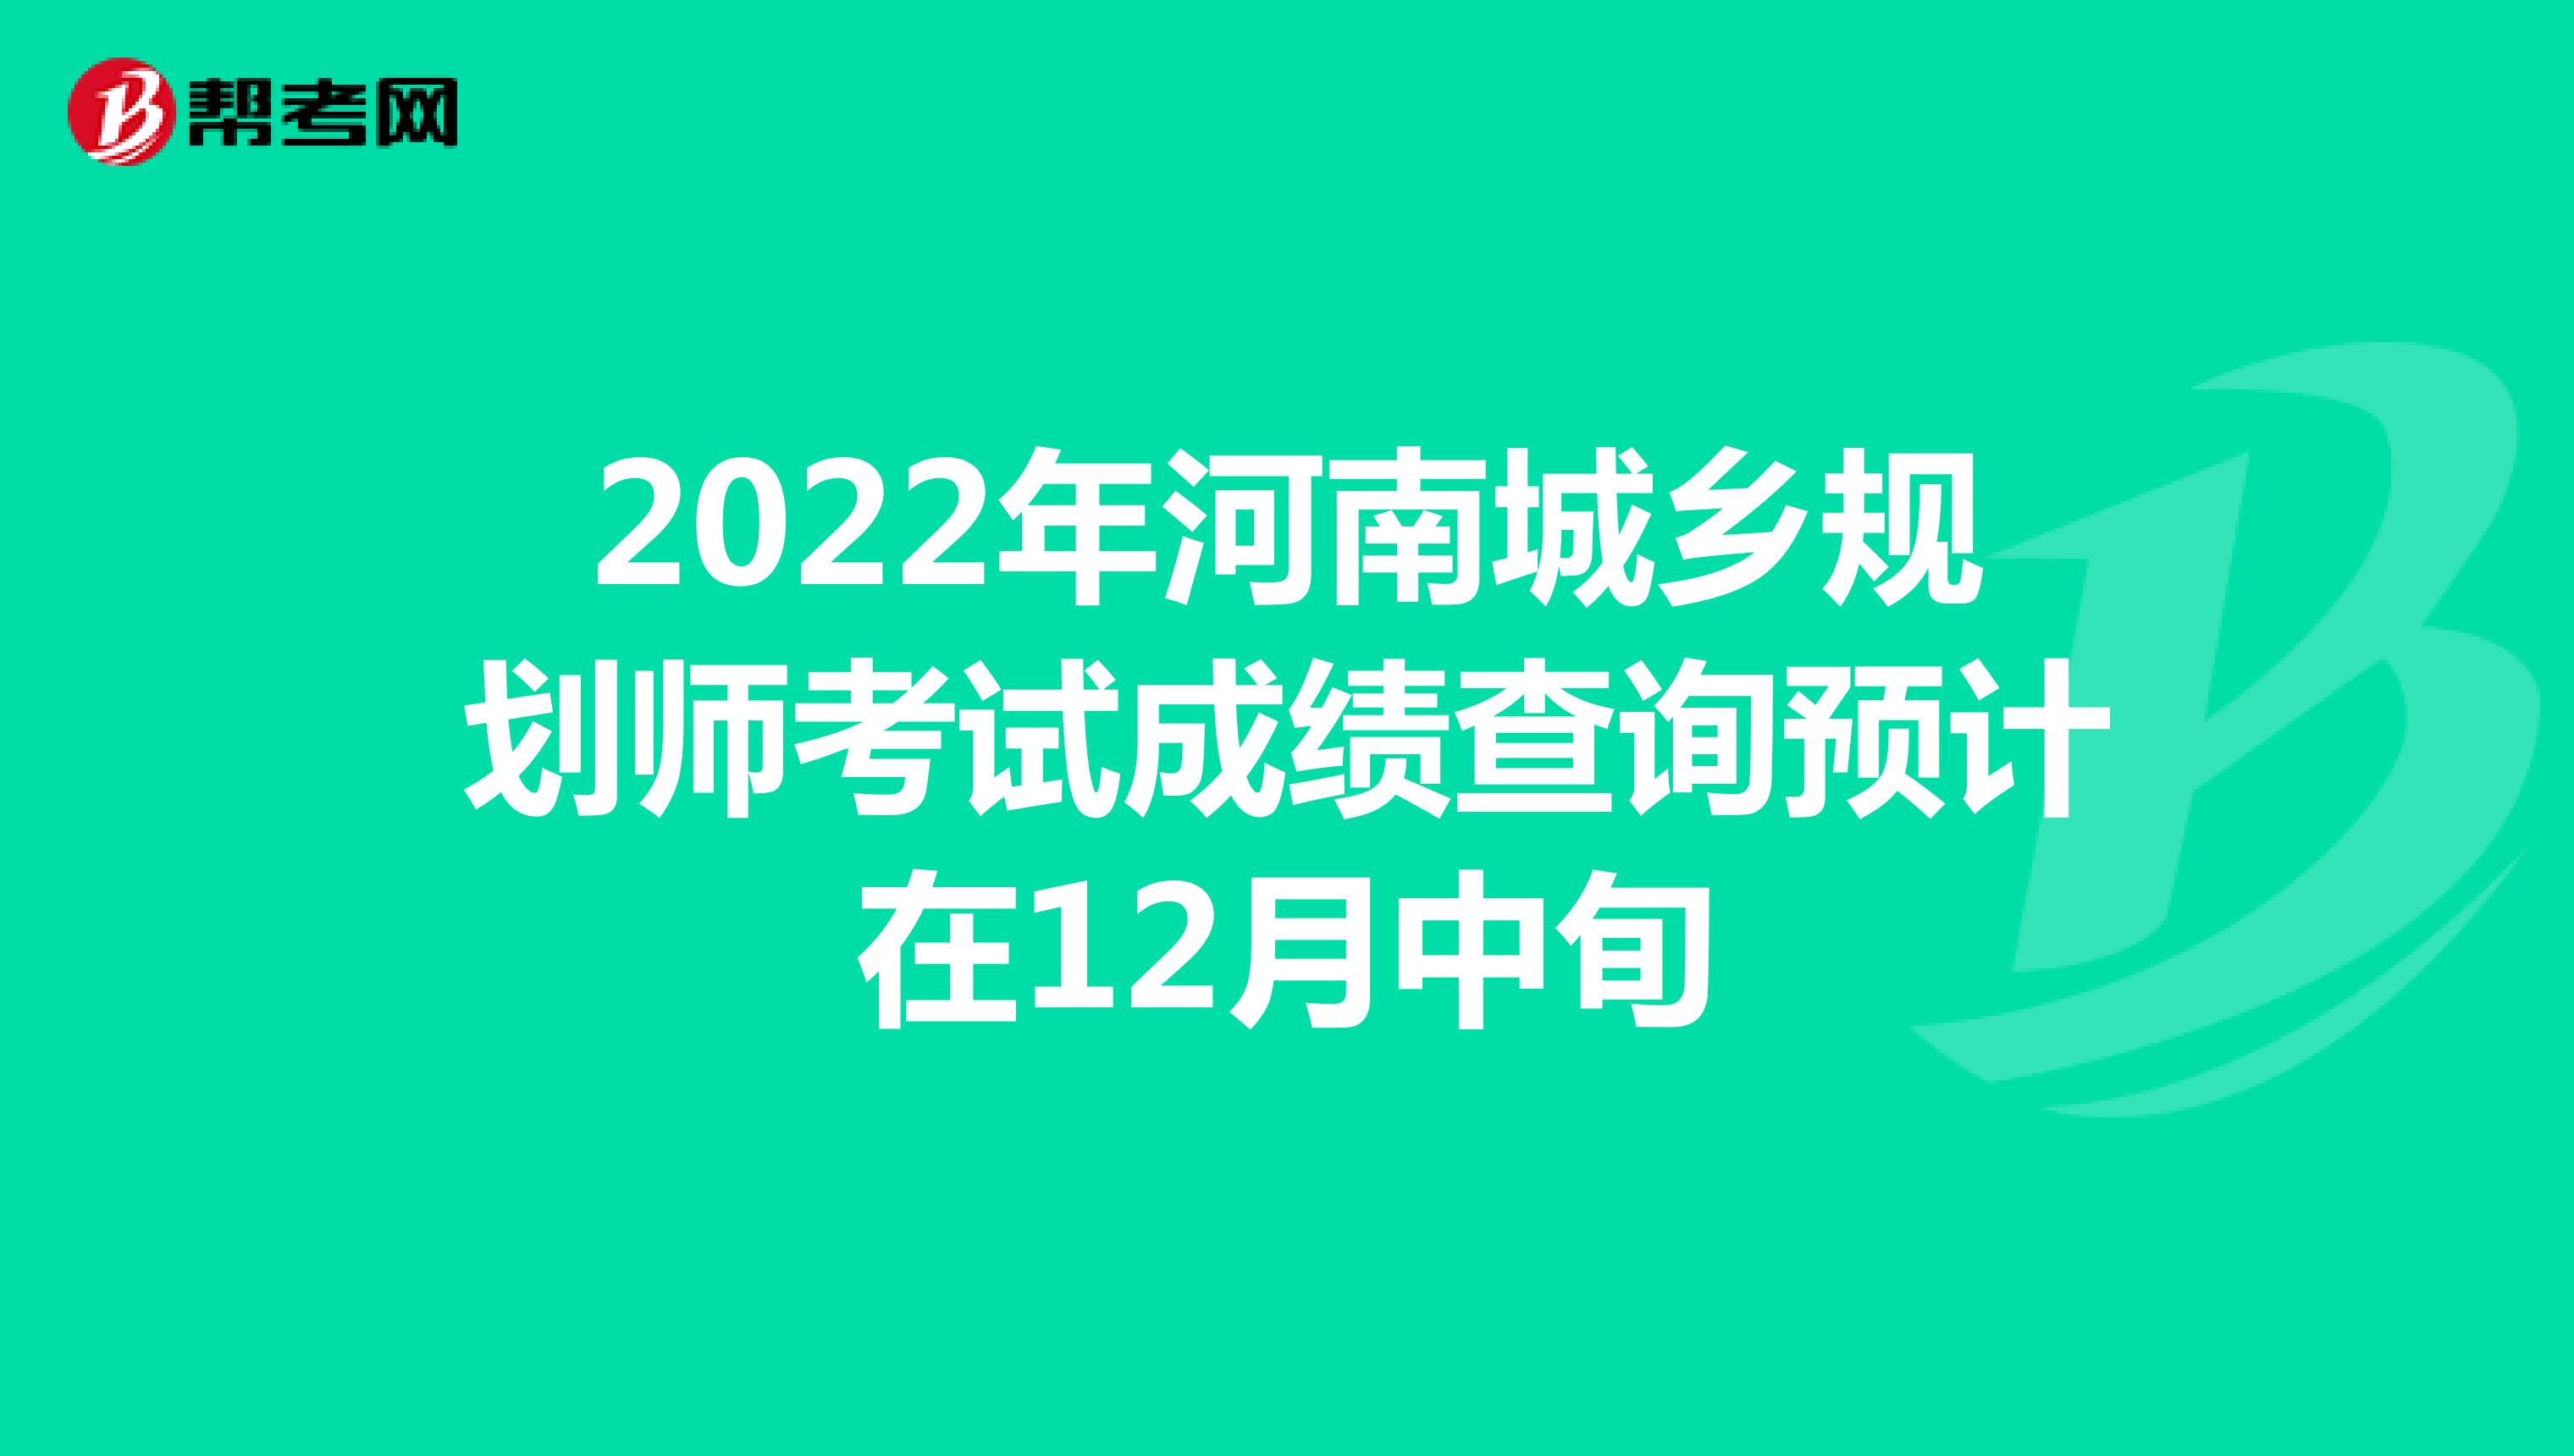 2022年河南城乡规划师考试成绩查询预计在12月中旬